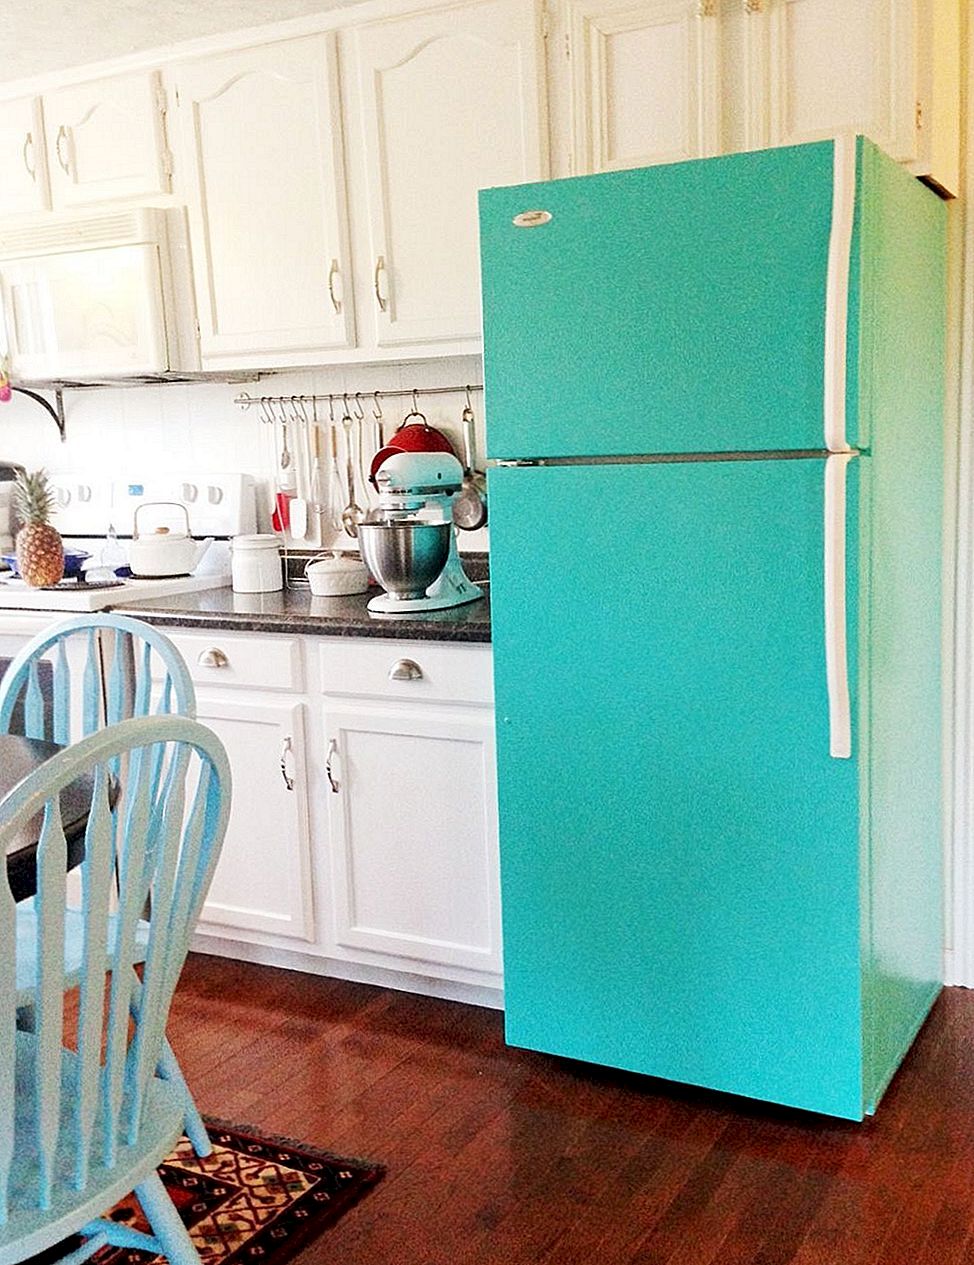 Enkle og morsomme måter å dekorere kjøleskapet på